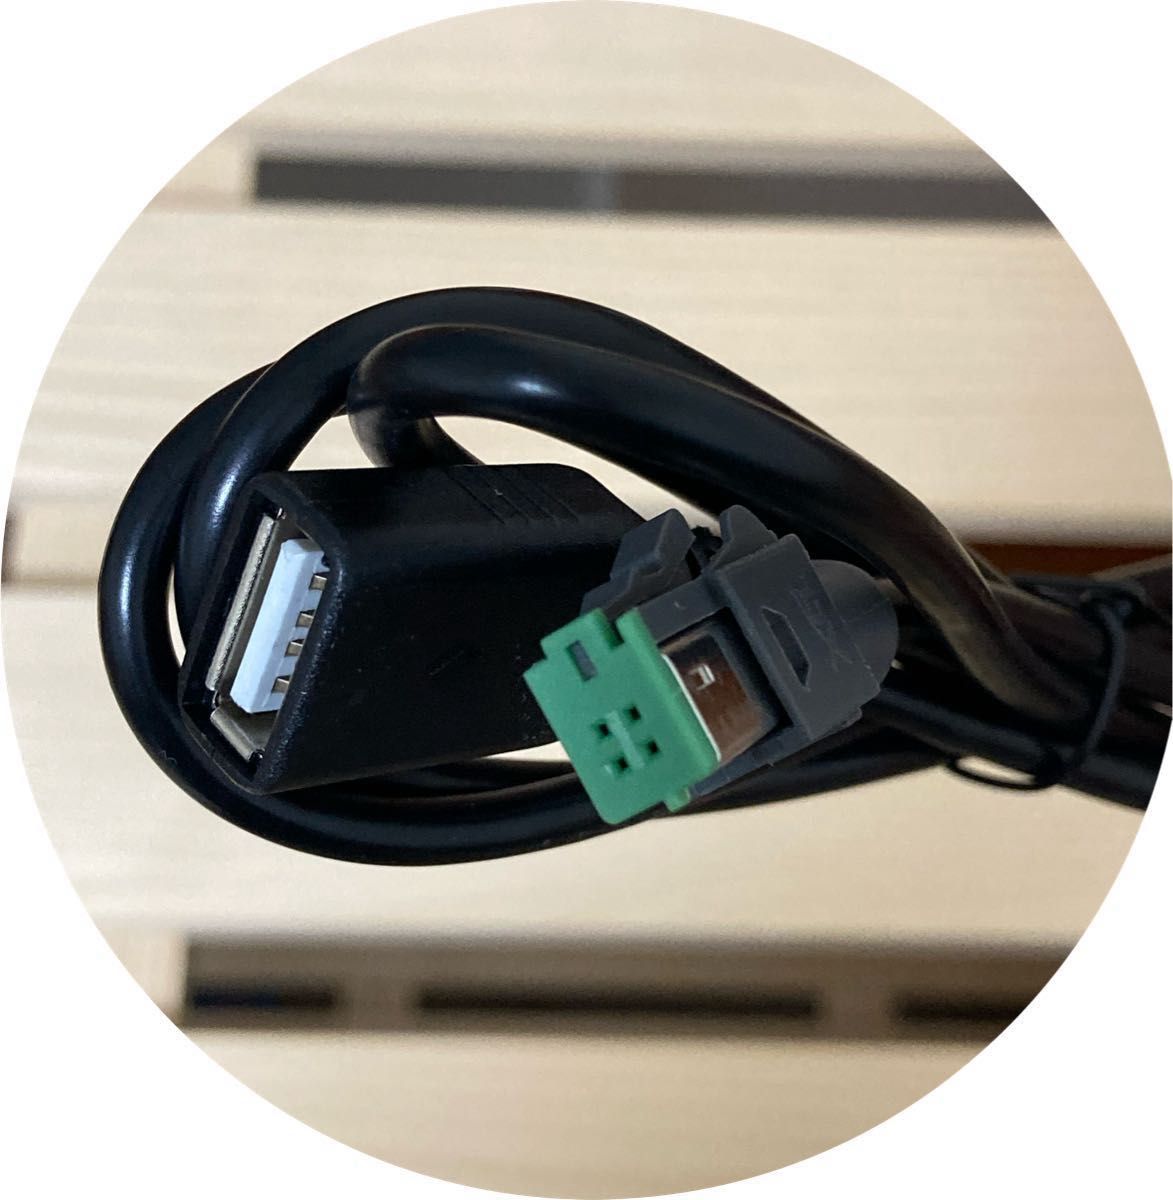 トヨタ純正ナビ 互換 USB接続ケーブル 充電器　高音質　音楽　カーナビ